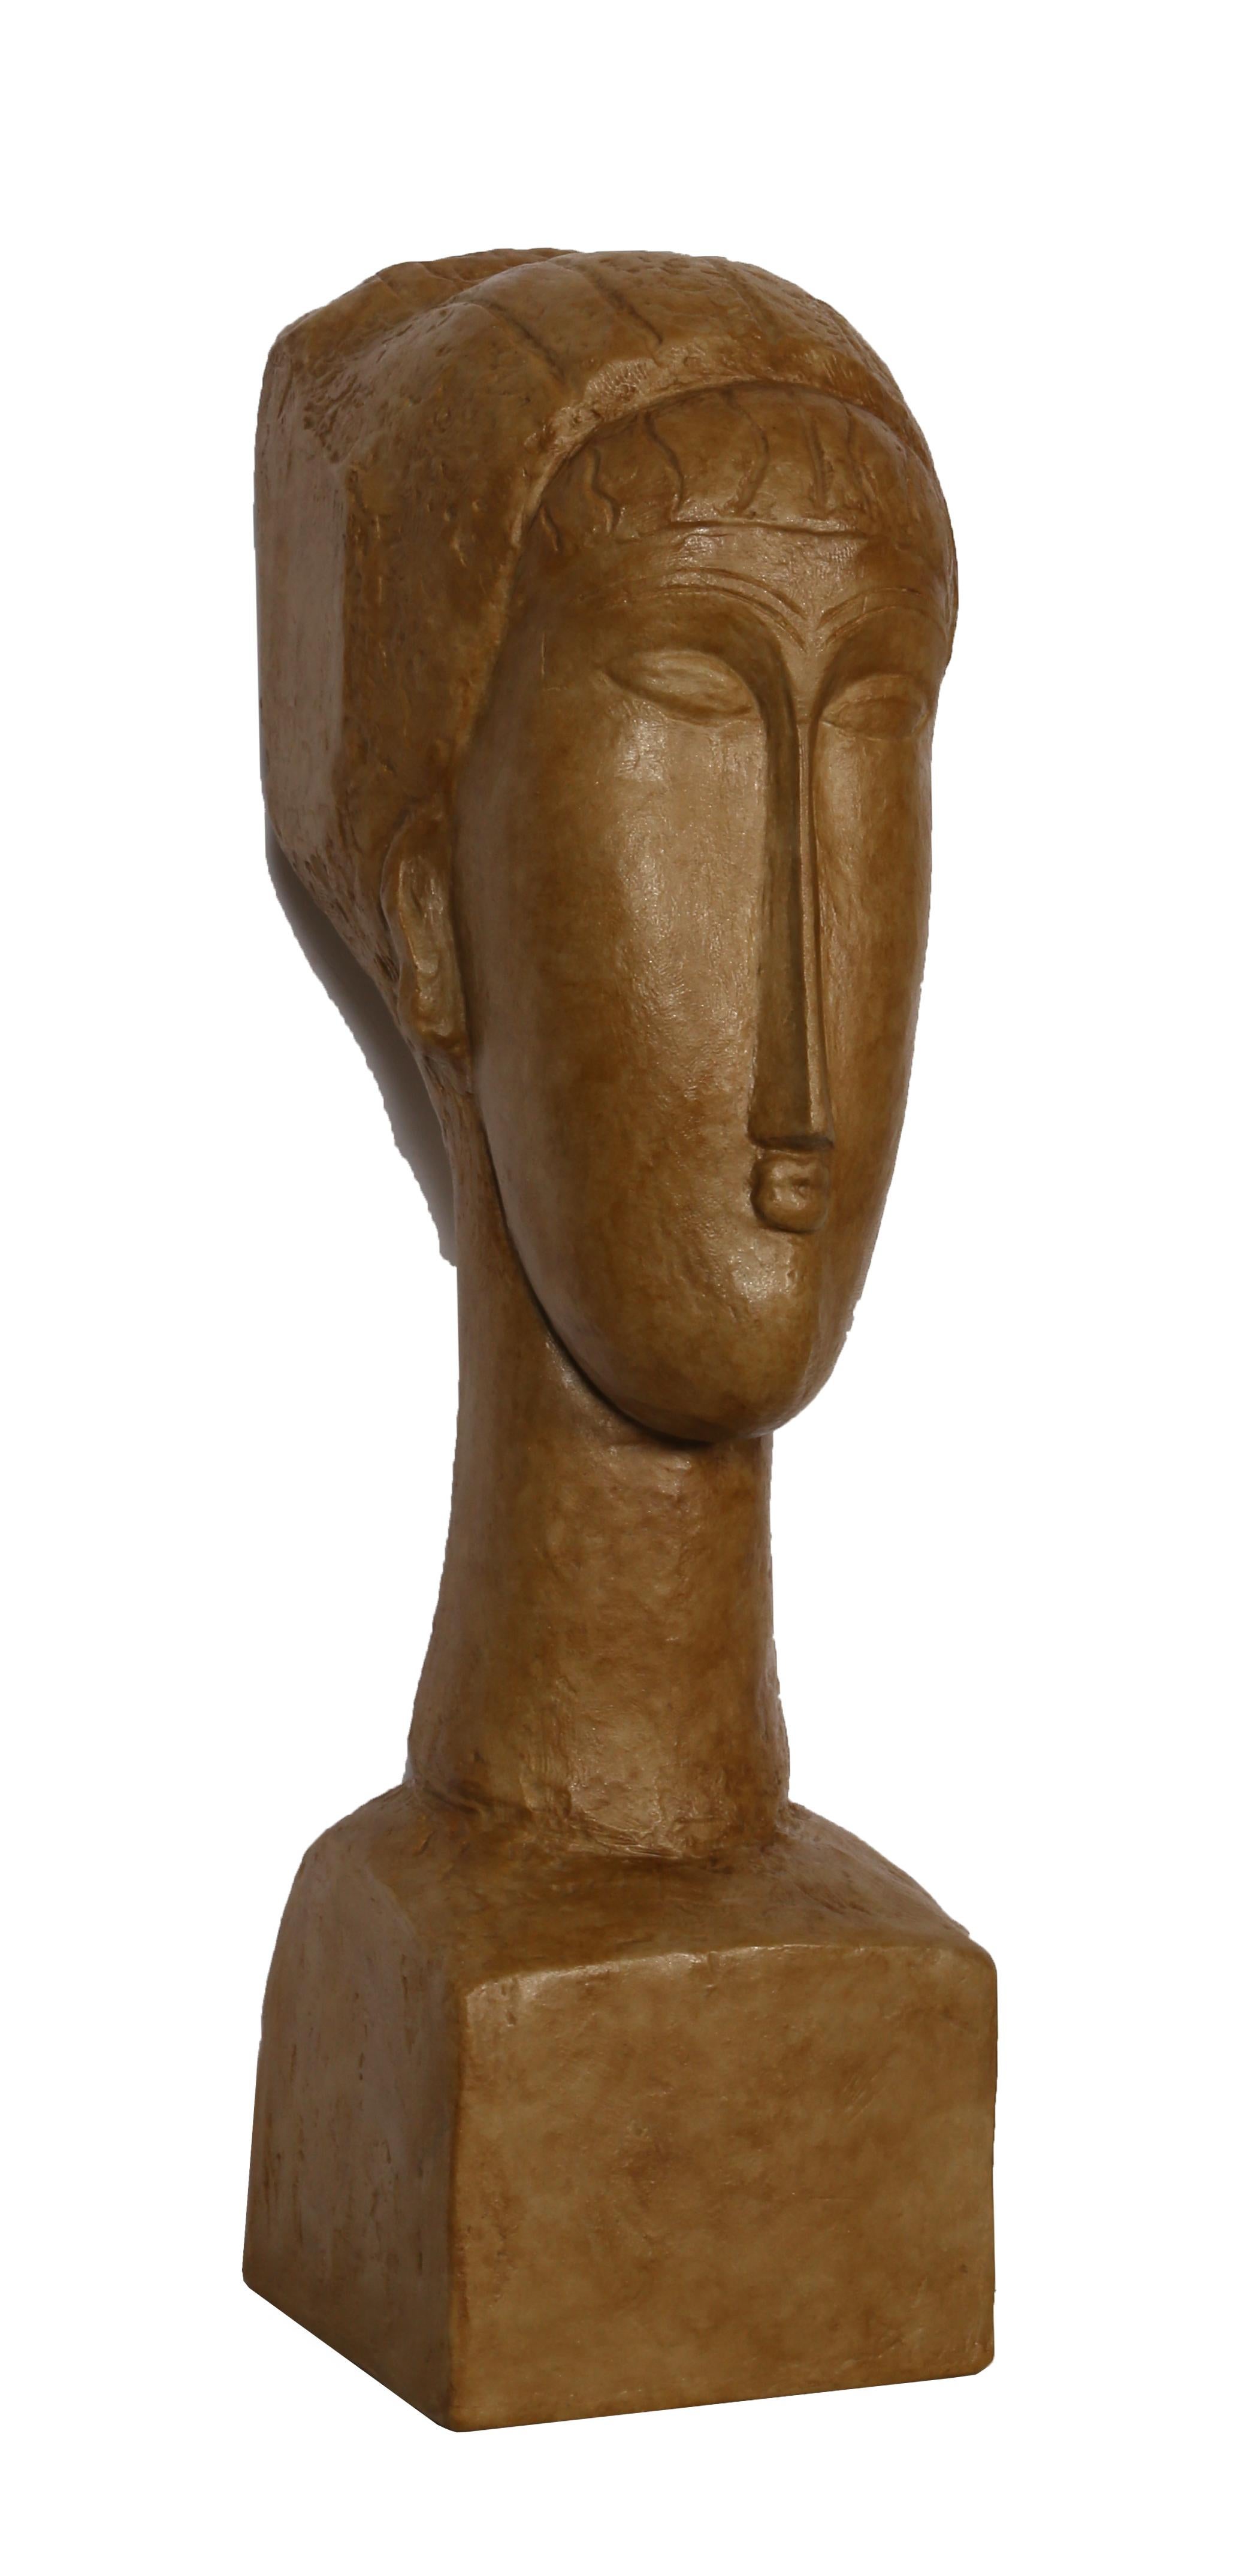 Tête de Femme, after Modigliani - Brown Figurative Sculpture by Amedeo Modigliani